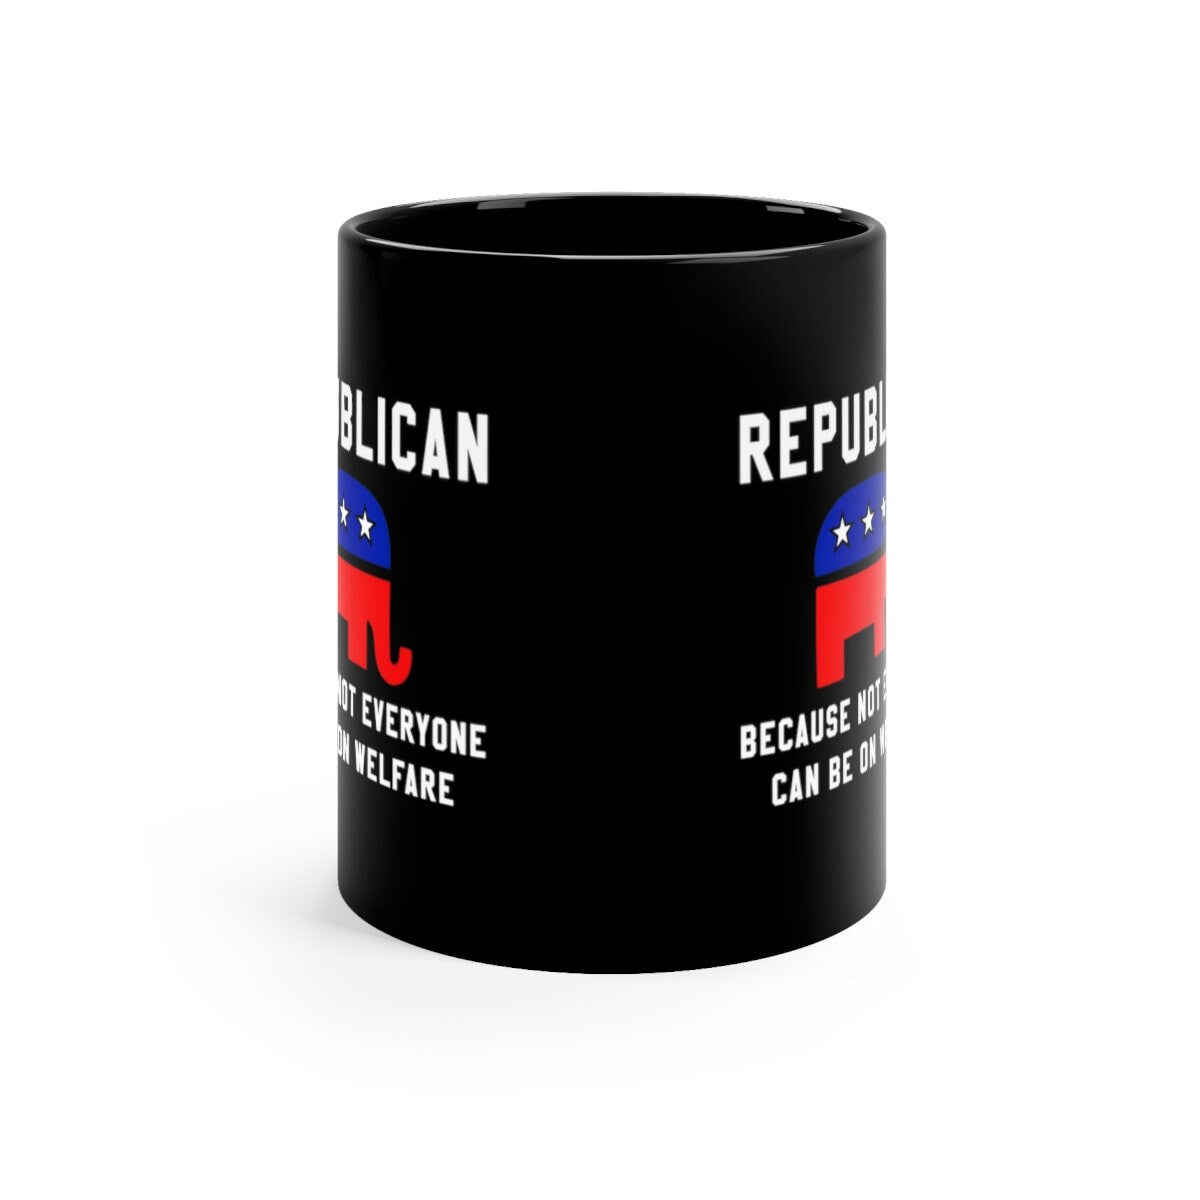 Ρεπουμπλικάνοι γιατί δεν μπορούν όλοι να παίρνουν καφέ πρόνοιας, ρεπουμπλικανικό δώρο, πολιτική κούπα, υψωμένο ρεπουμπλικανό, γραφικό Elephant, πολιτική κούπα - plusminusco.com